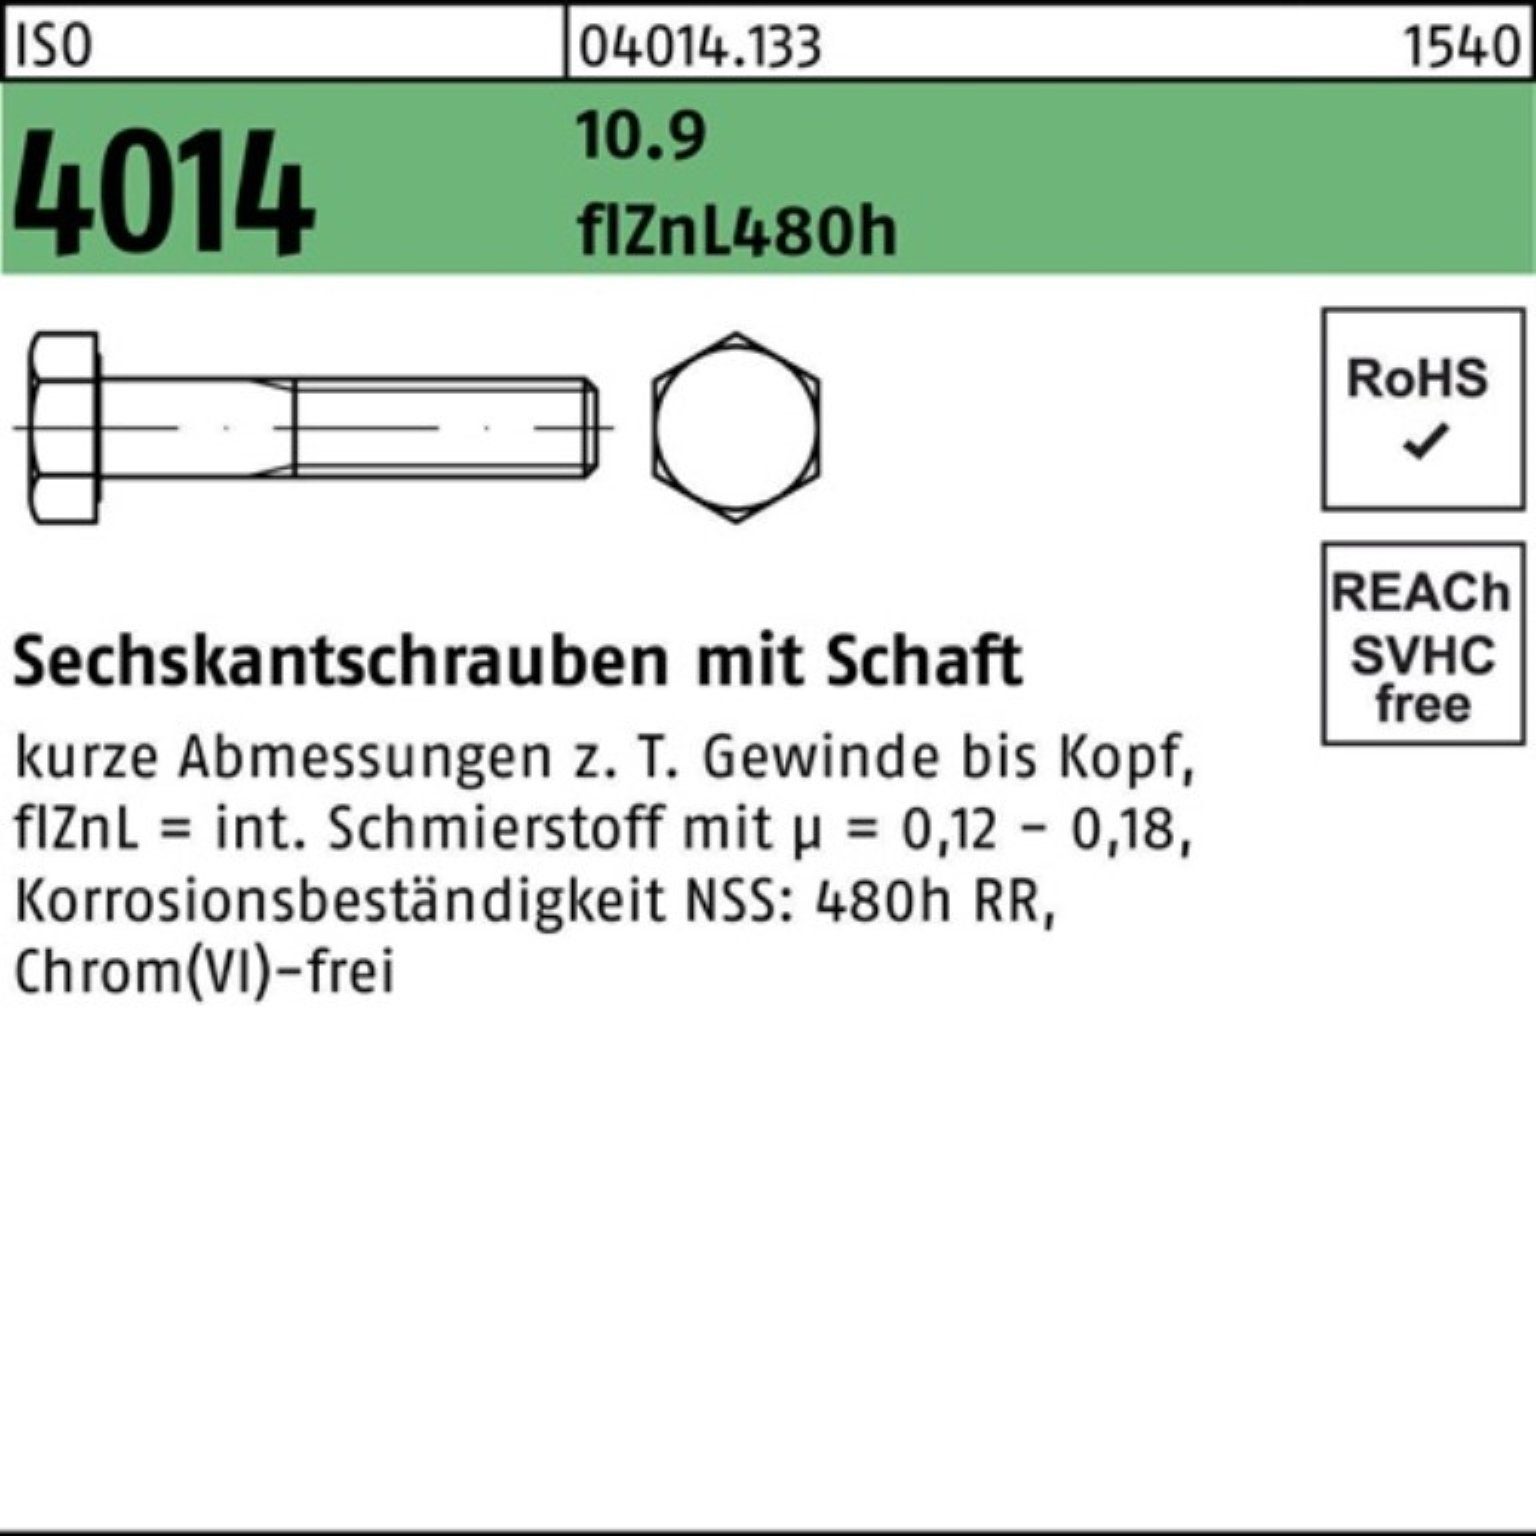 Sechskantschraube Schaft Bufab 4014 zinklamellen Sechskantschraube M10x Pack 10.9 ISO 100er 45